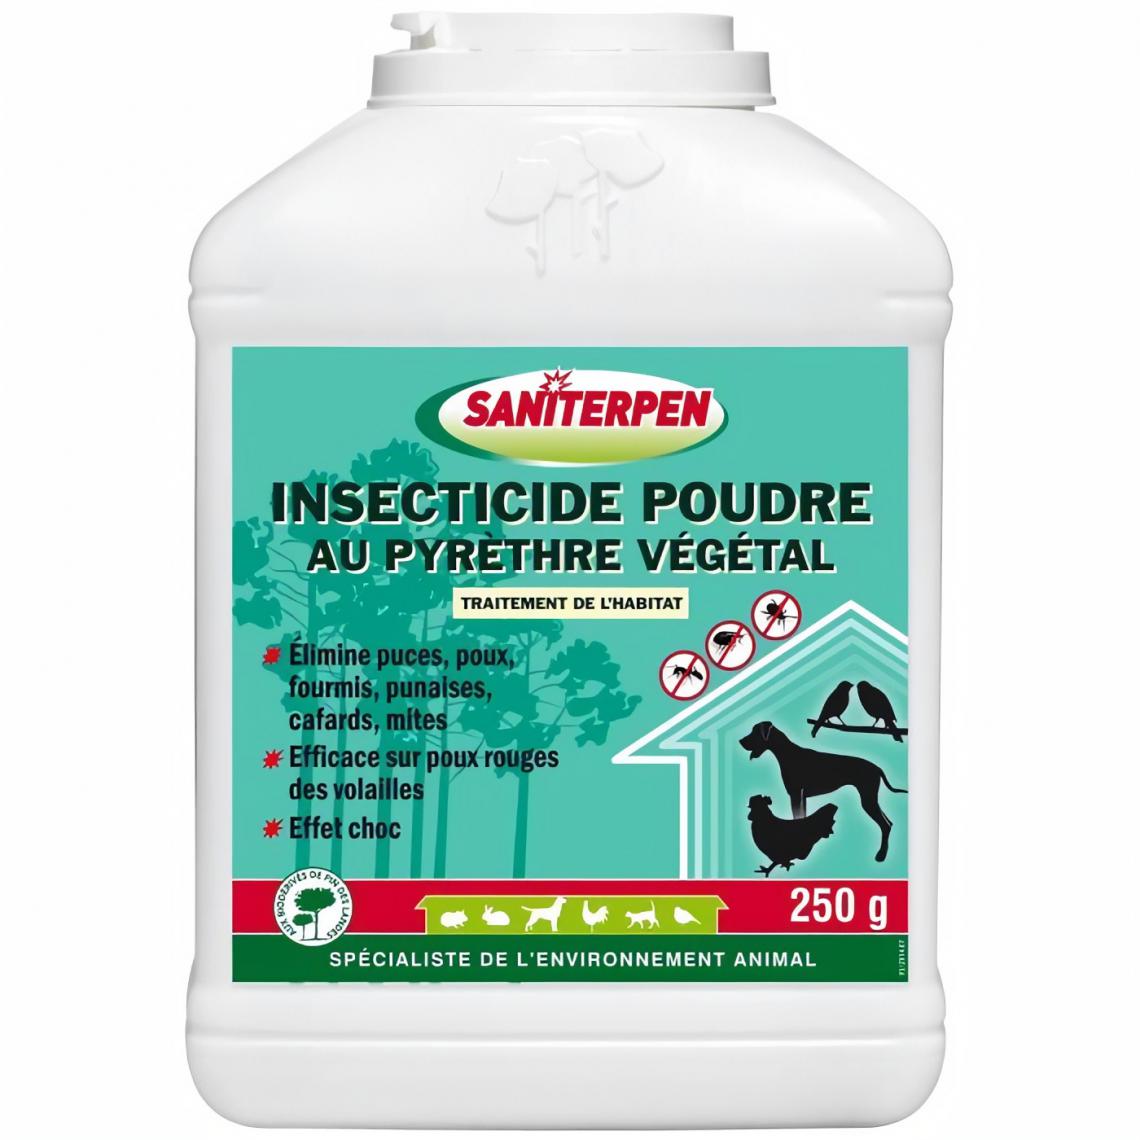 Saniterpen - SANITERPEN Insecticide PDR Pyrethre - Pour l'habitat et l'environnement de l'animal - 250 g - Traitement de l'eau pour aquarium